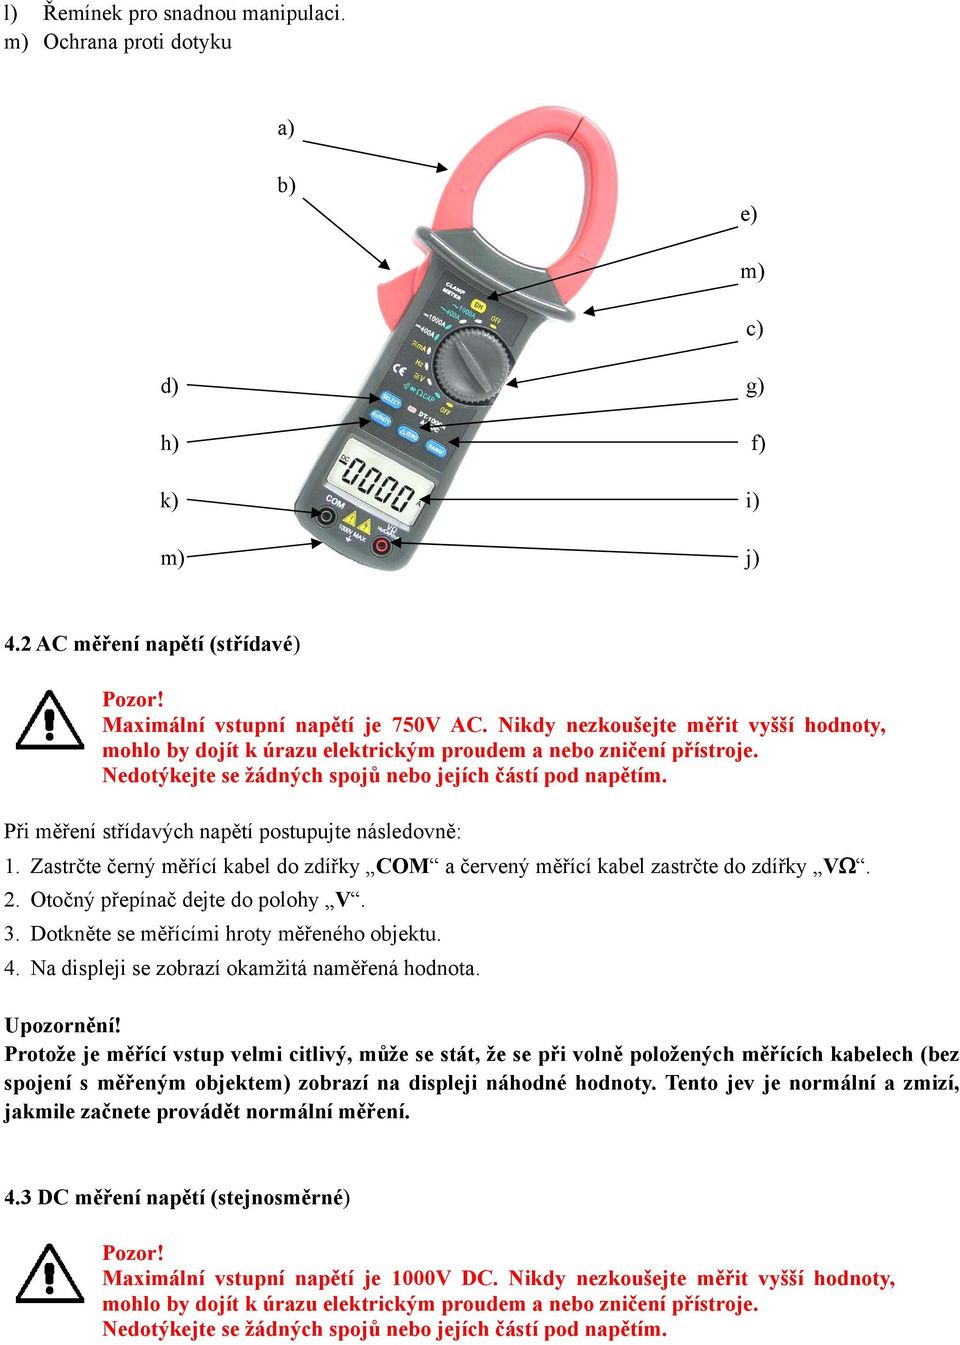 Při měření střídavých napětí postupujte následovně: 1. Zastrčte černý měřící kabel do zdířky COM a červený měřící kabel zastrčte do zdířky VΩ. 2. Otočný přepínač dejte do polohy V. 3.